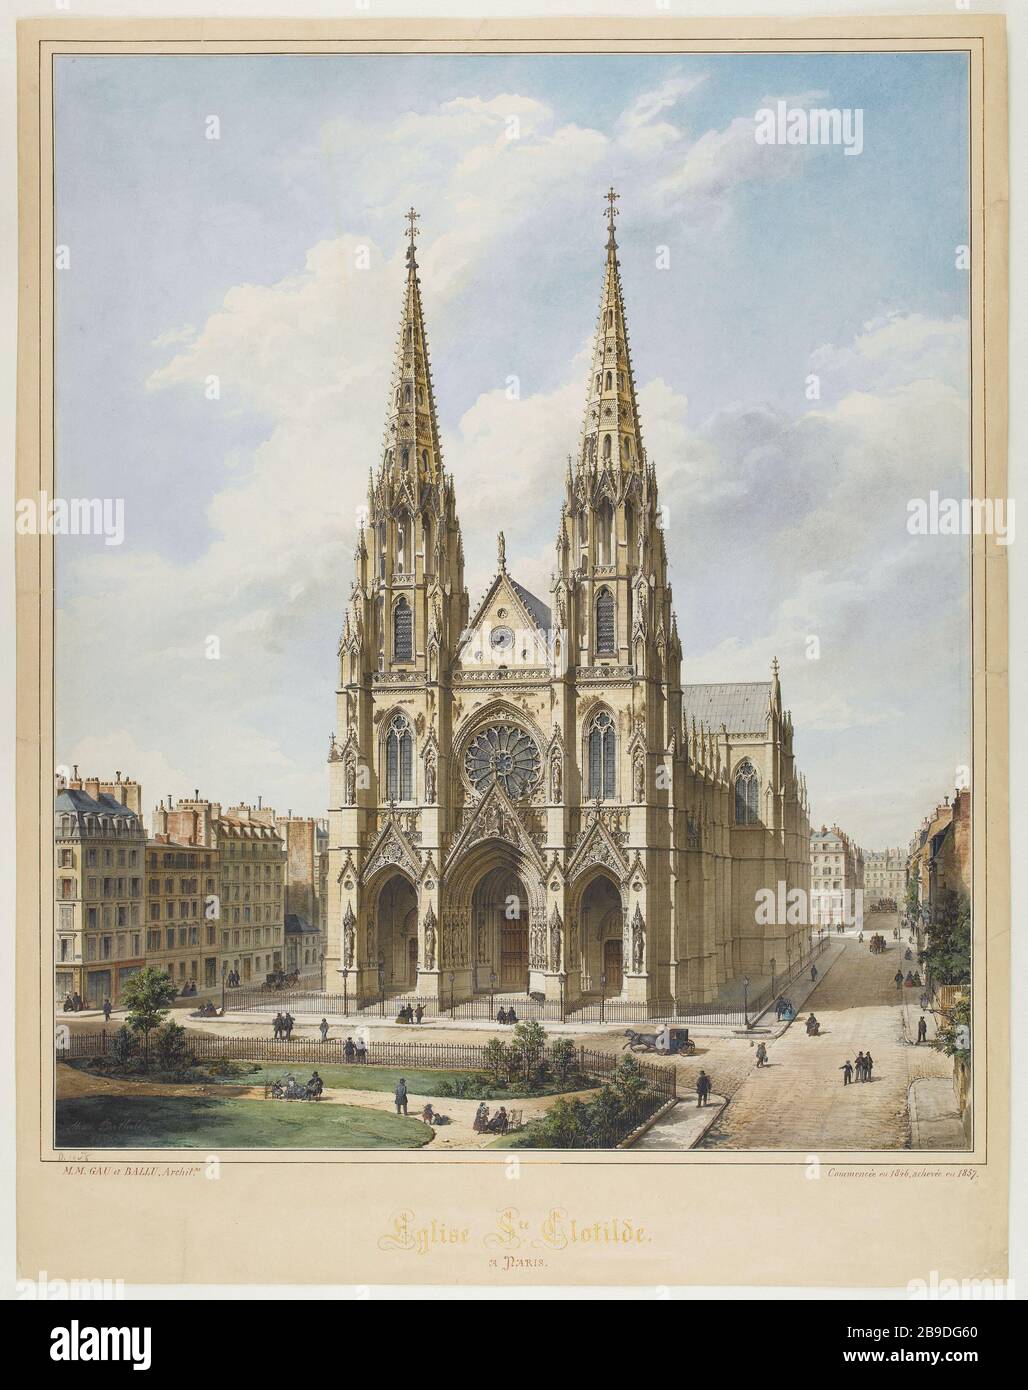 Eglise Sainte Clotilde Max Berthelin (1811-1877). Eglise Sainte Clotilde. Aquarelle sur trait. 1857. Parigi, musée Carnavalet. Foto Stock